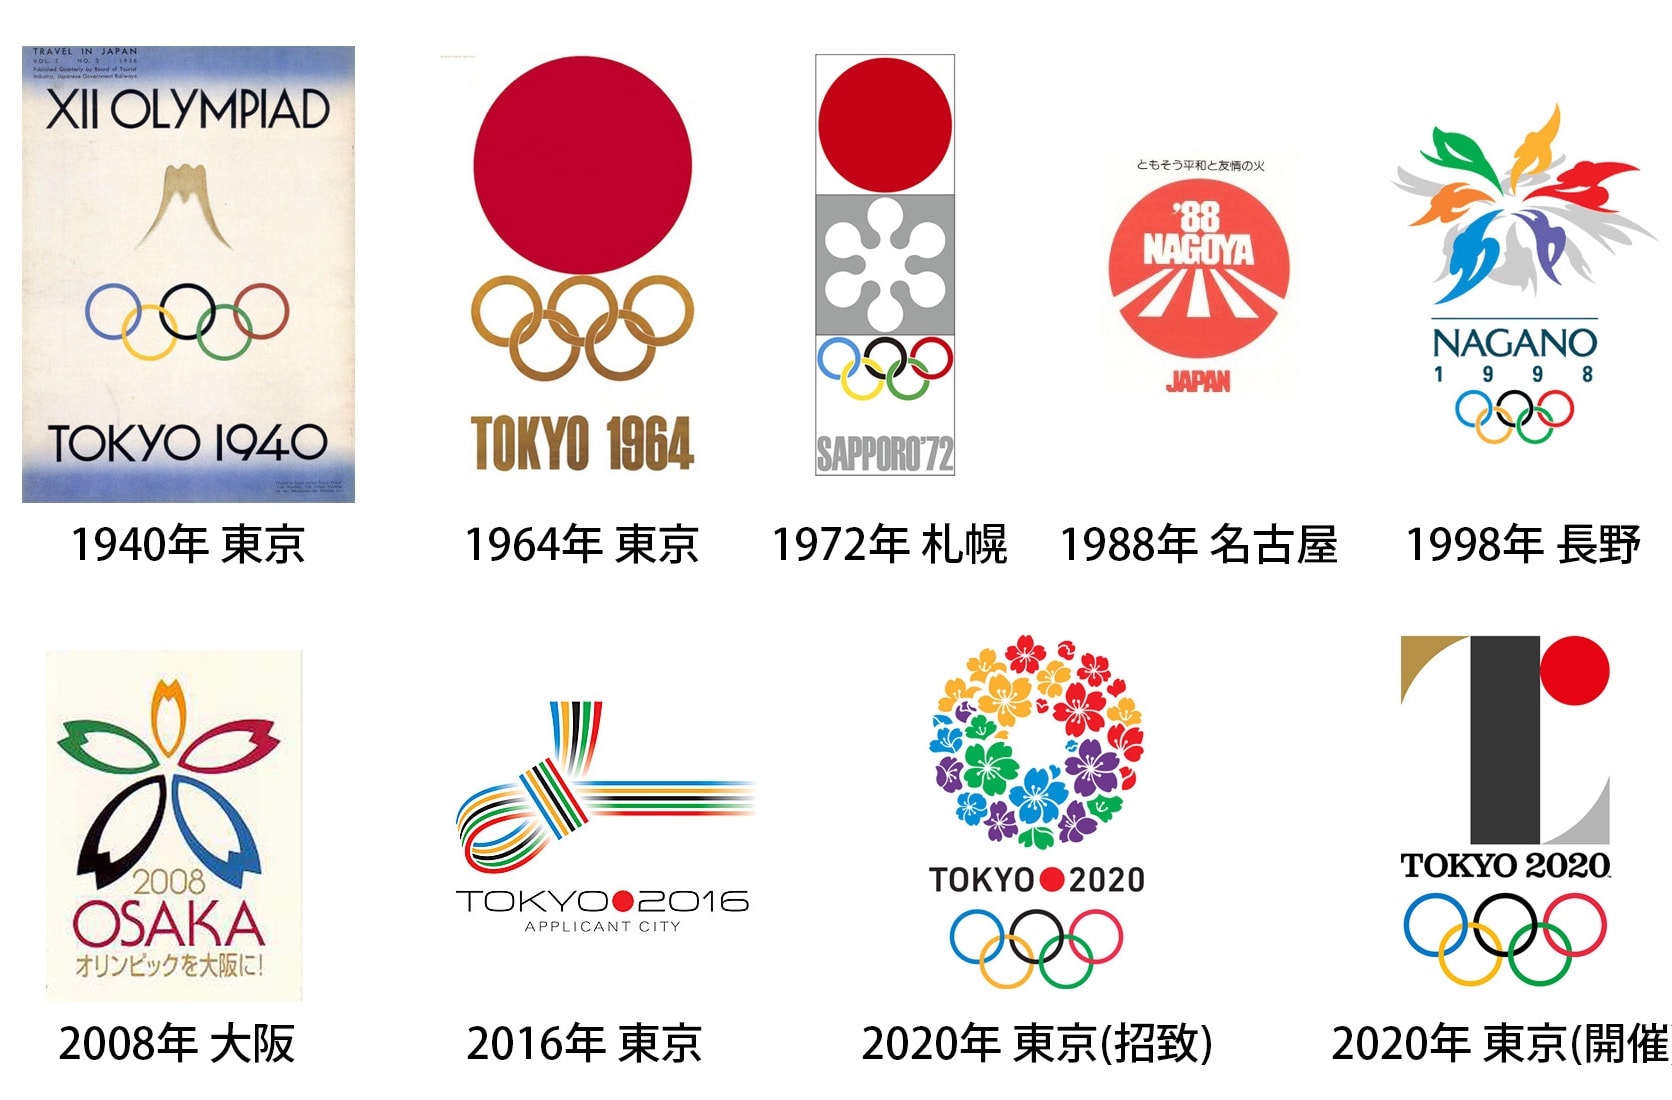 1940年東京オリンピック